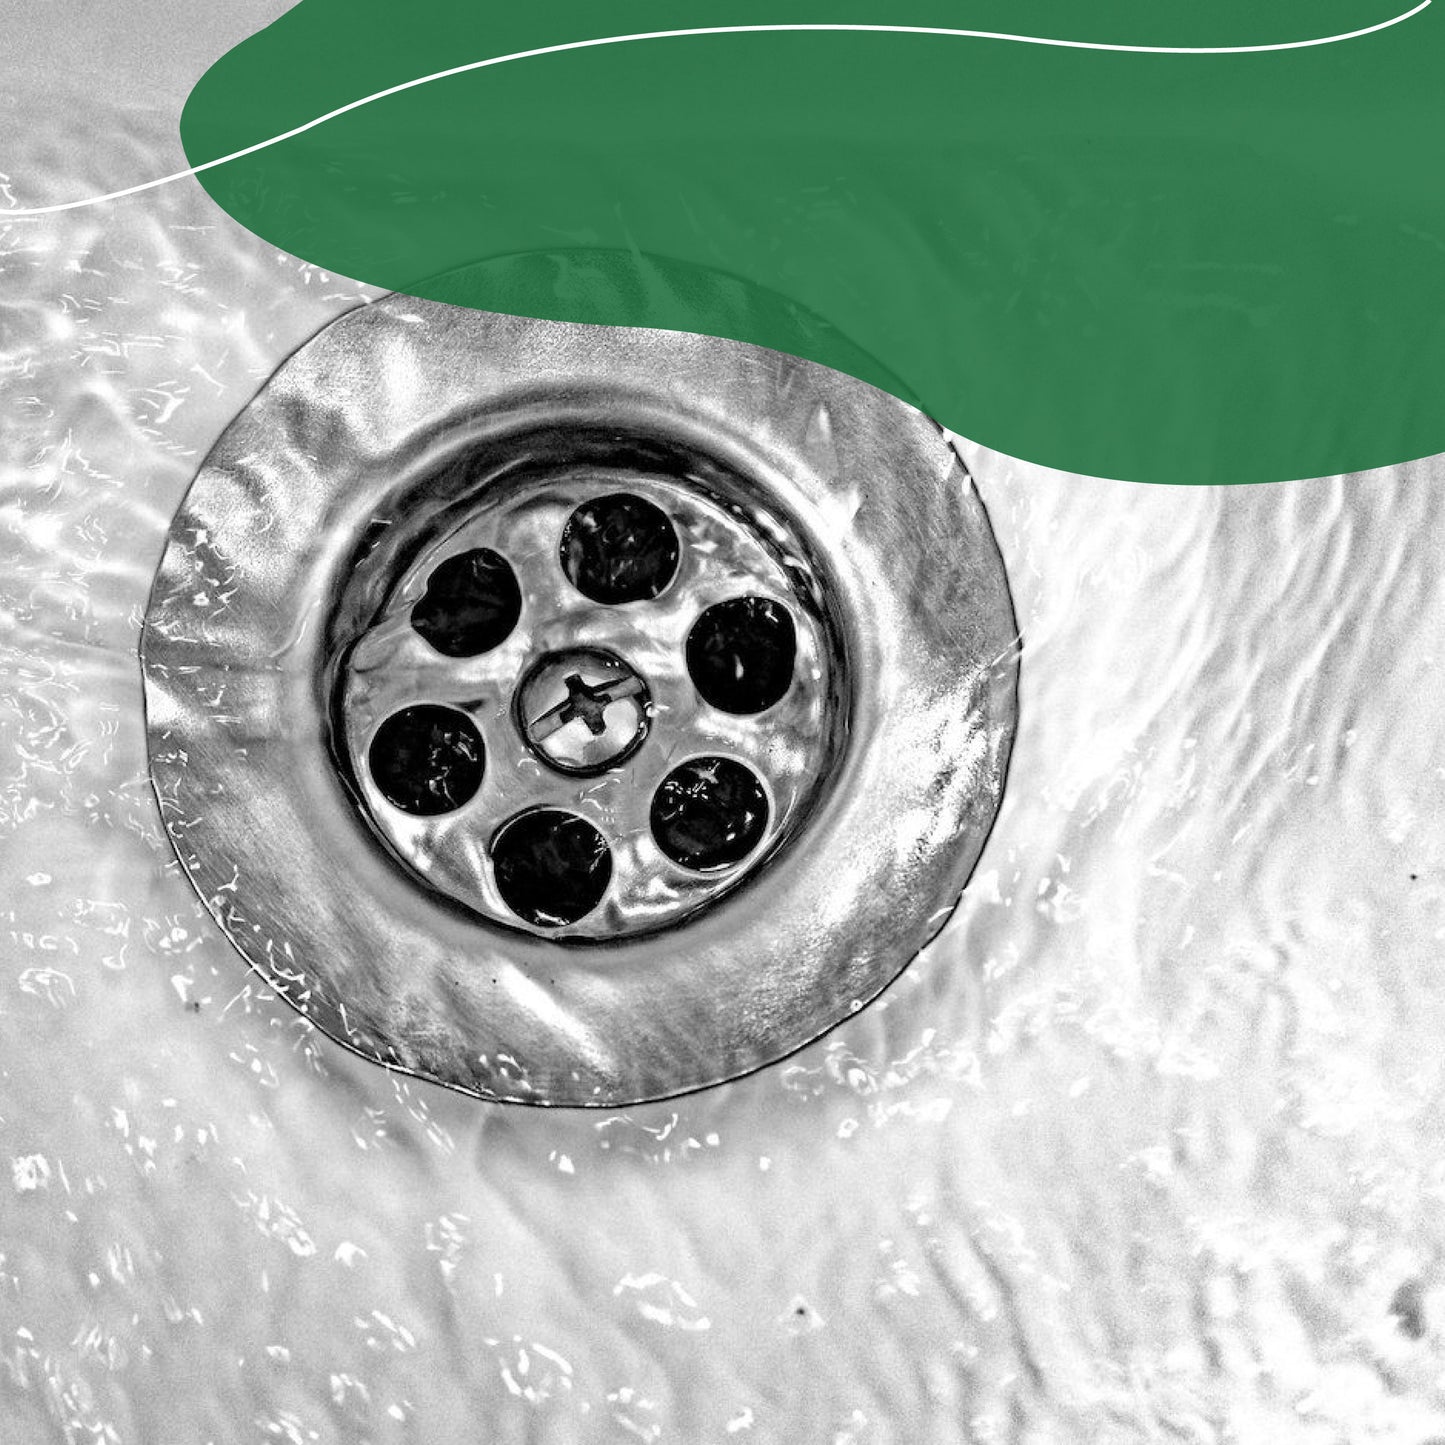 Tratamiento contra malos olores en tuberías coladeras drenajes de baño y cocina - ODOUR STOP CONCENTRADO - 100% Ecológico.